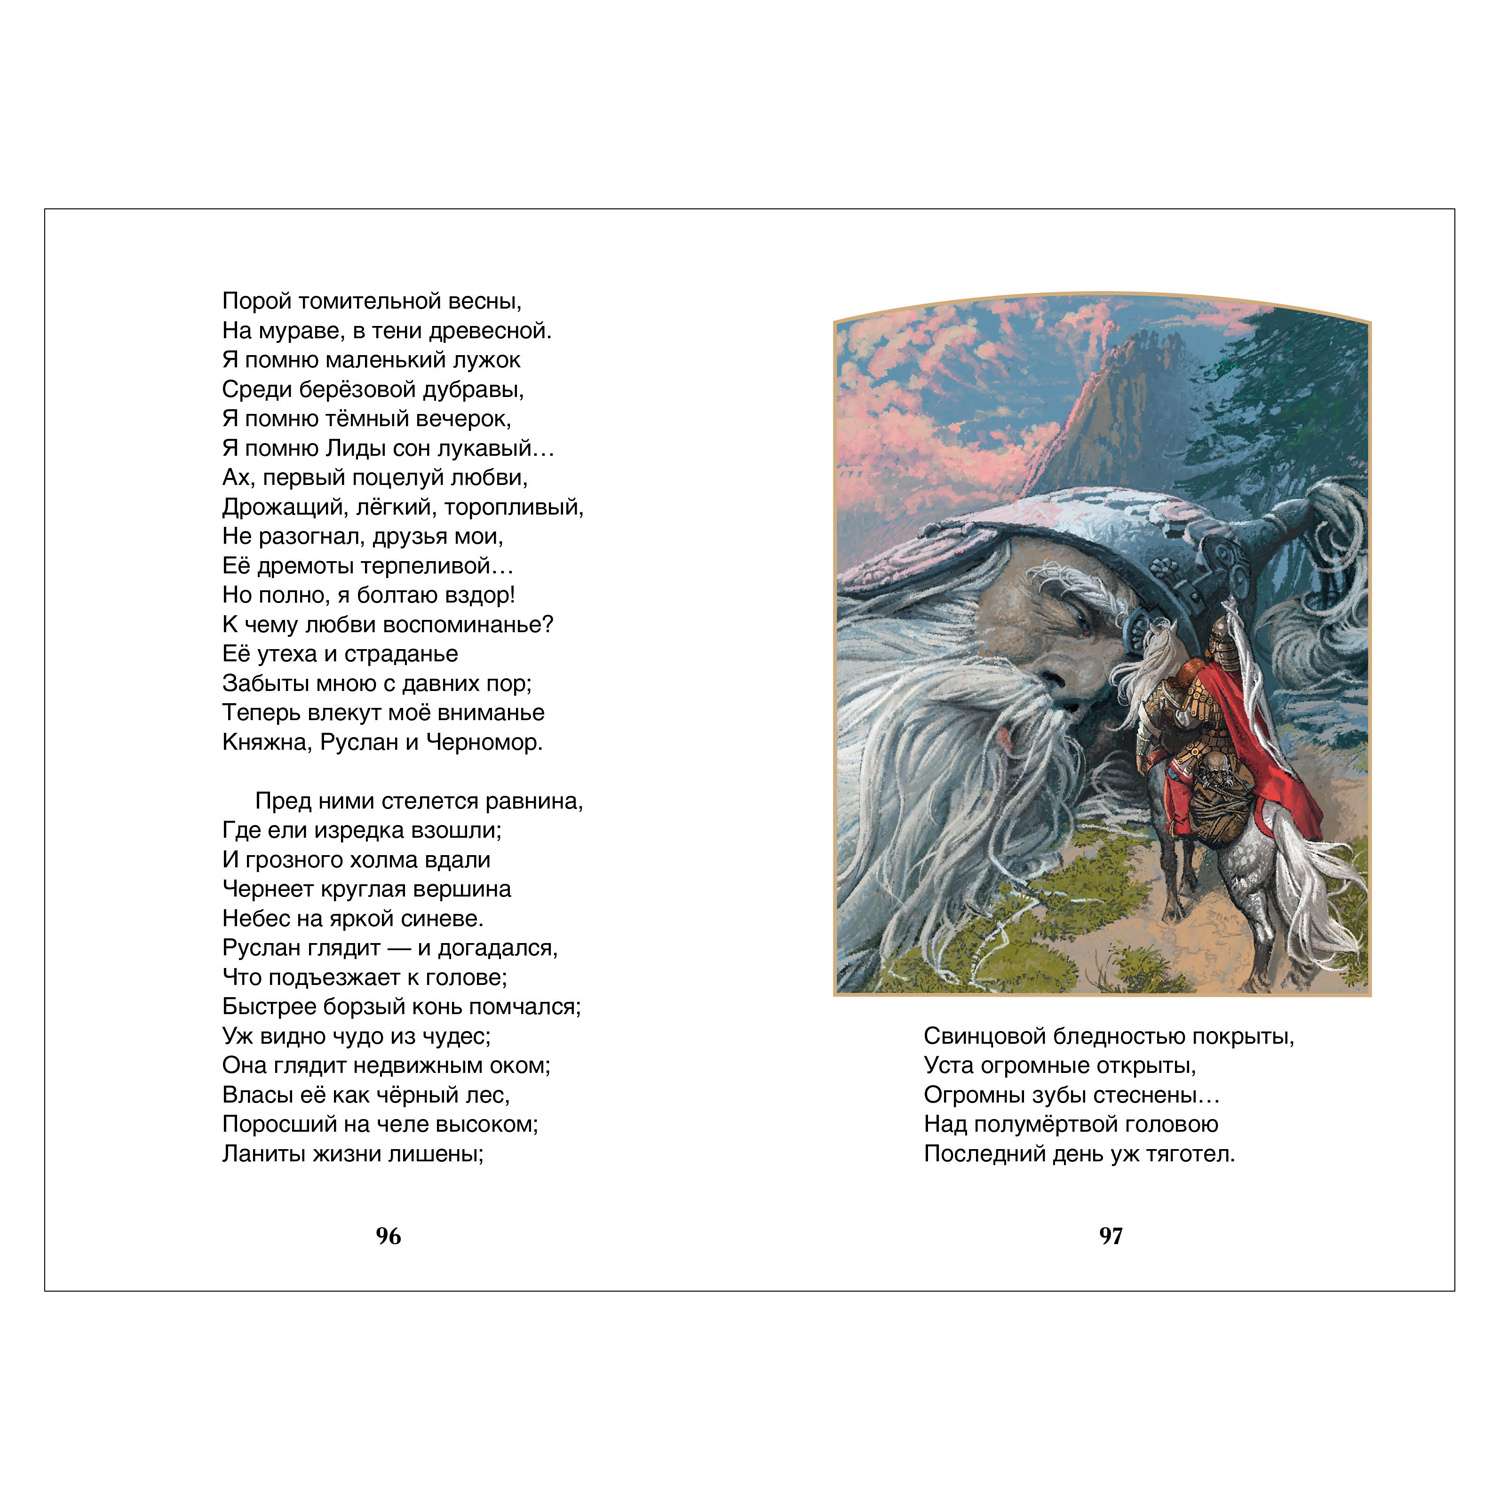 Стихи Александра Сергеевича Пушкина о природе - зима, весна, осень